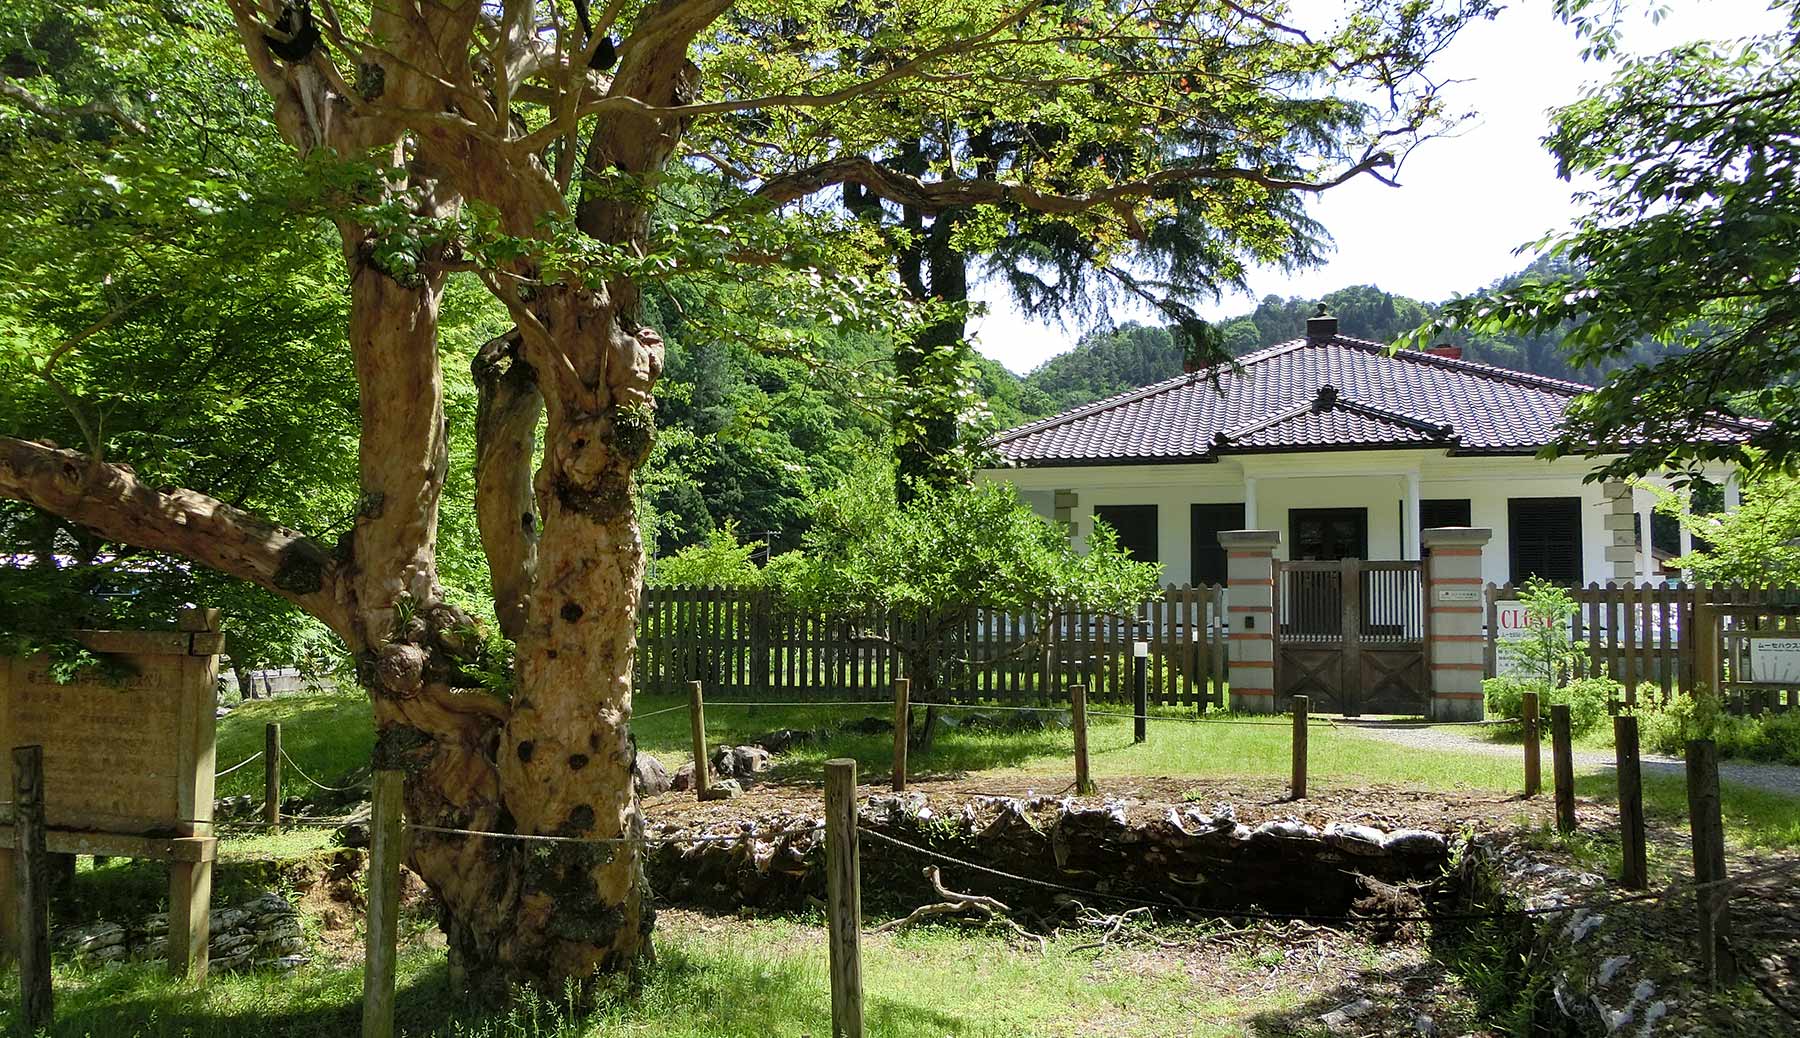 L'ancien site de traitement du minerai de Mikobata